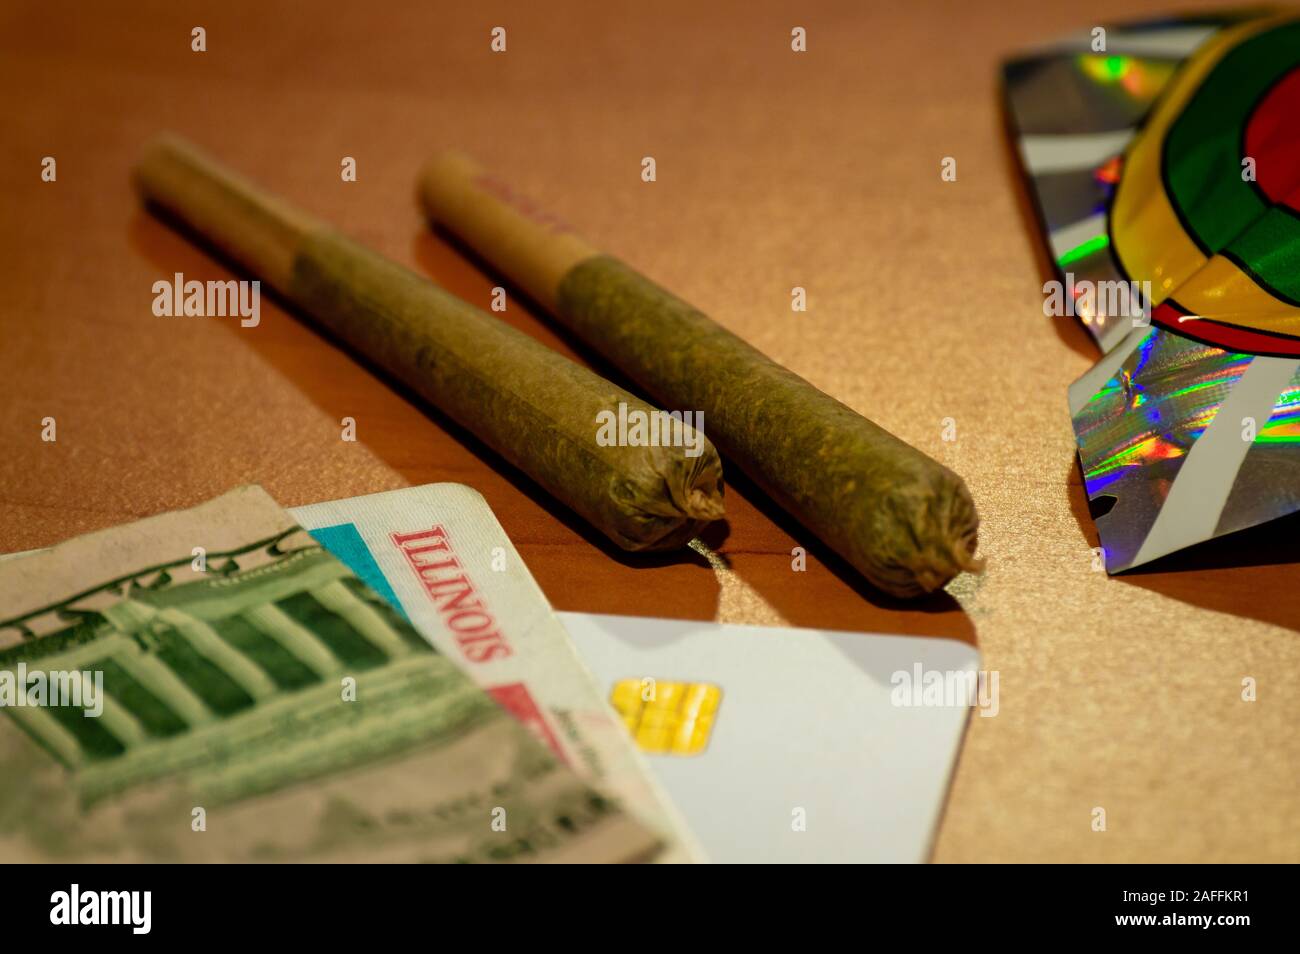 La légalisation du cannabis récréatif dans l'Illinois. Deux joints de marijuana sont affichées avec une carte d'identité de l'Illinois et de l'argent sur une table. Banque D'Images